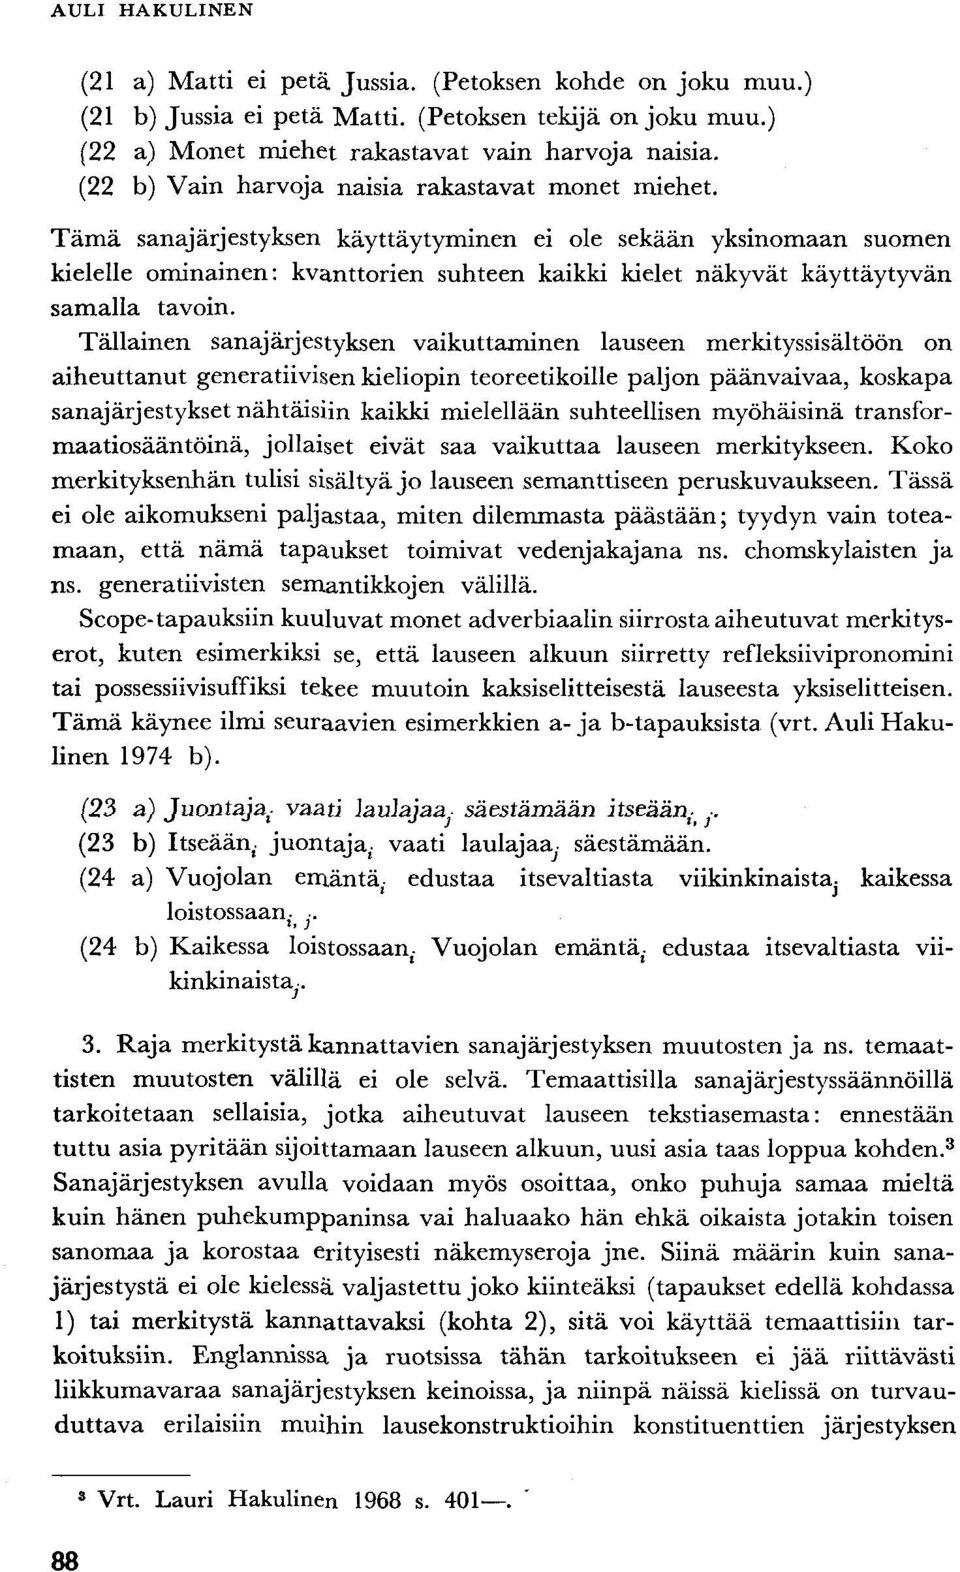 Tämä sanajärjestyksen käyttäytyminen ei ole sekään yksinomaan suomen kielelle ominainen: kvanttorien suhteen kaikki kielet näkyvät käyttäytyvän samalla tavoin.